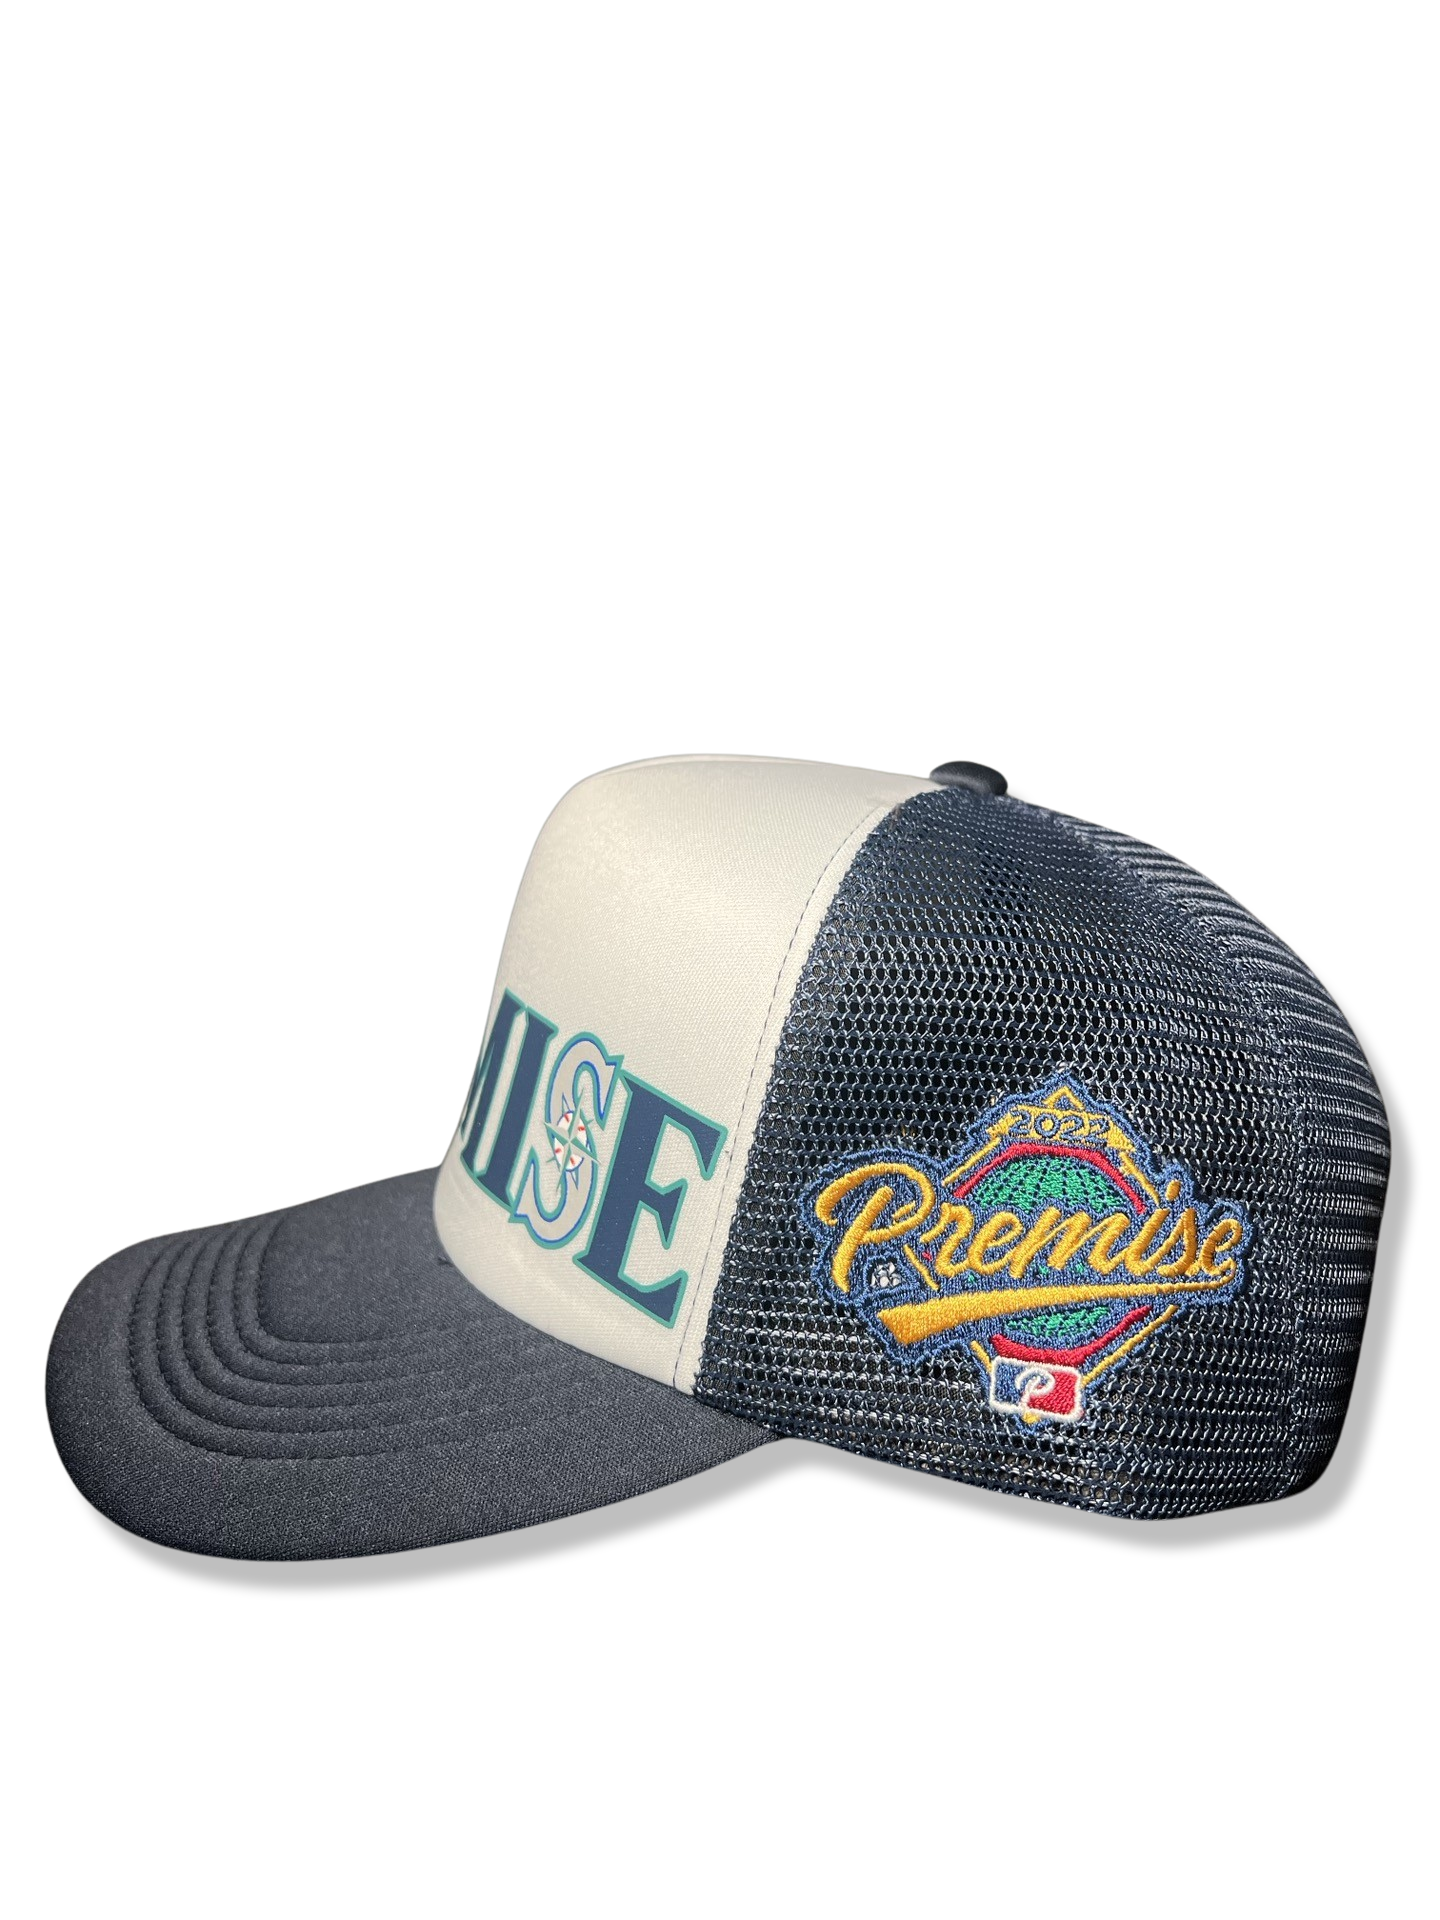 Seattle Premise Trucker Hat